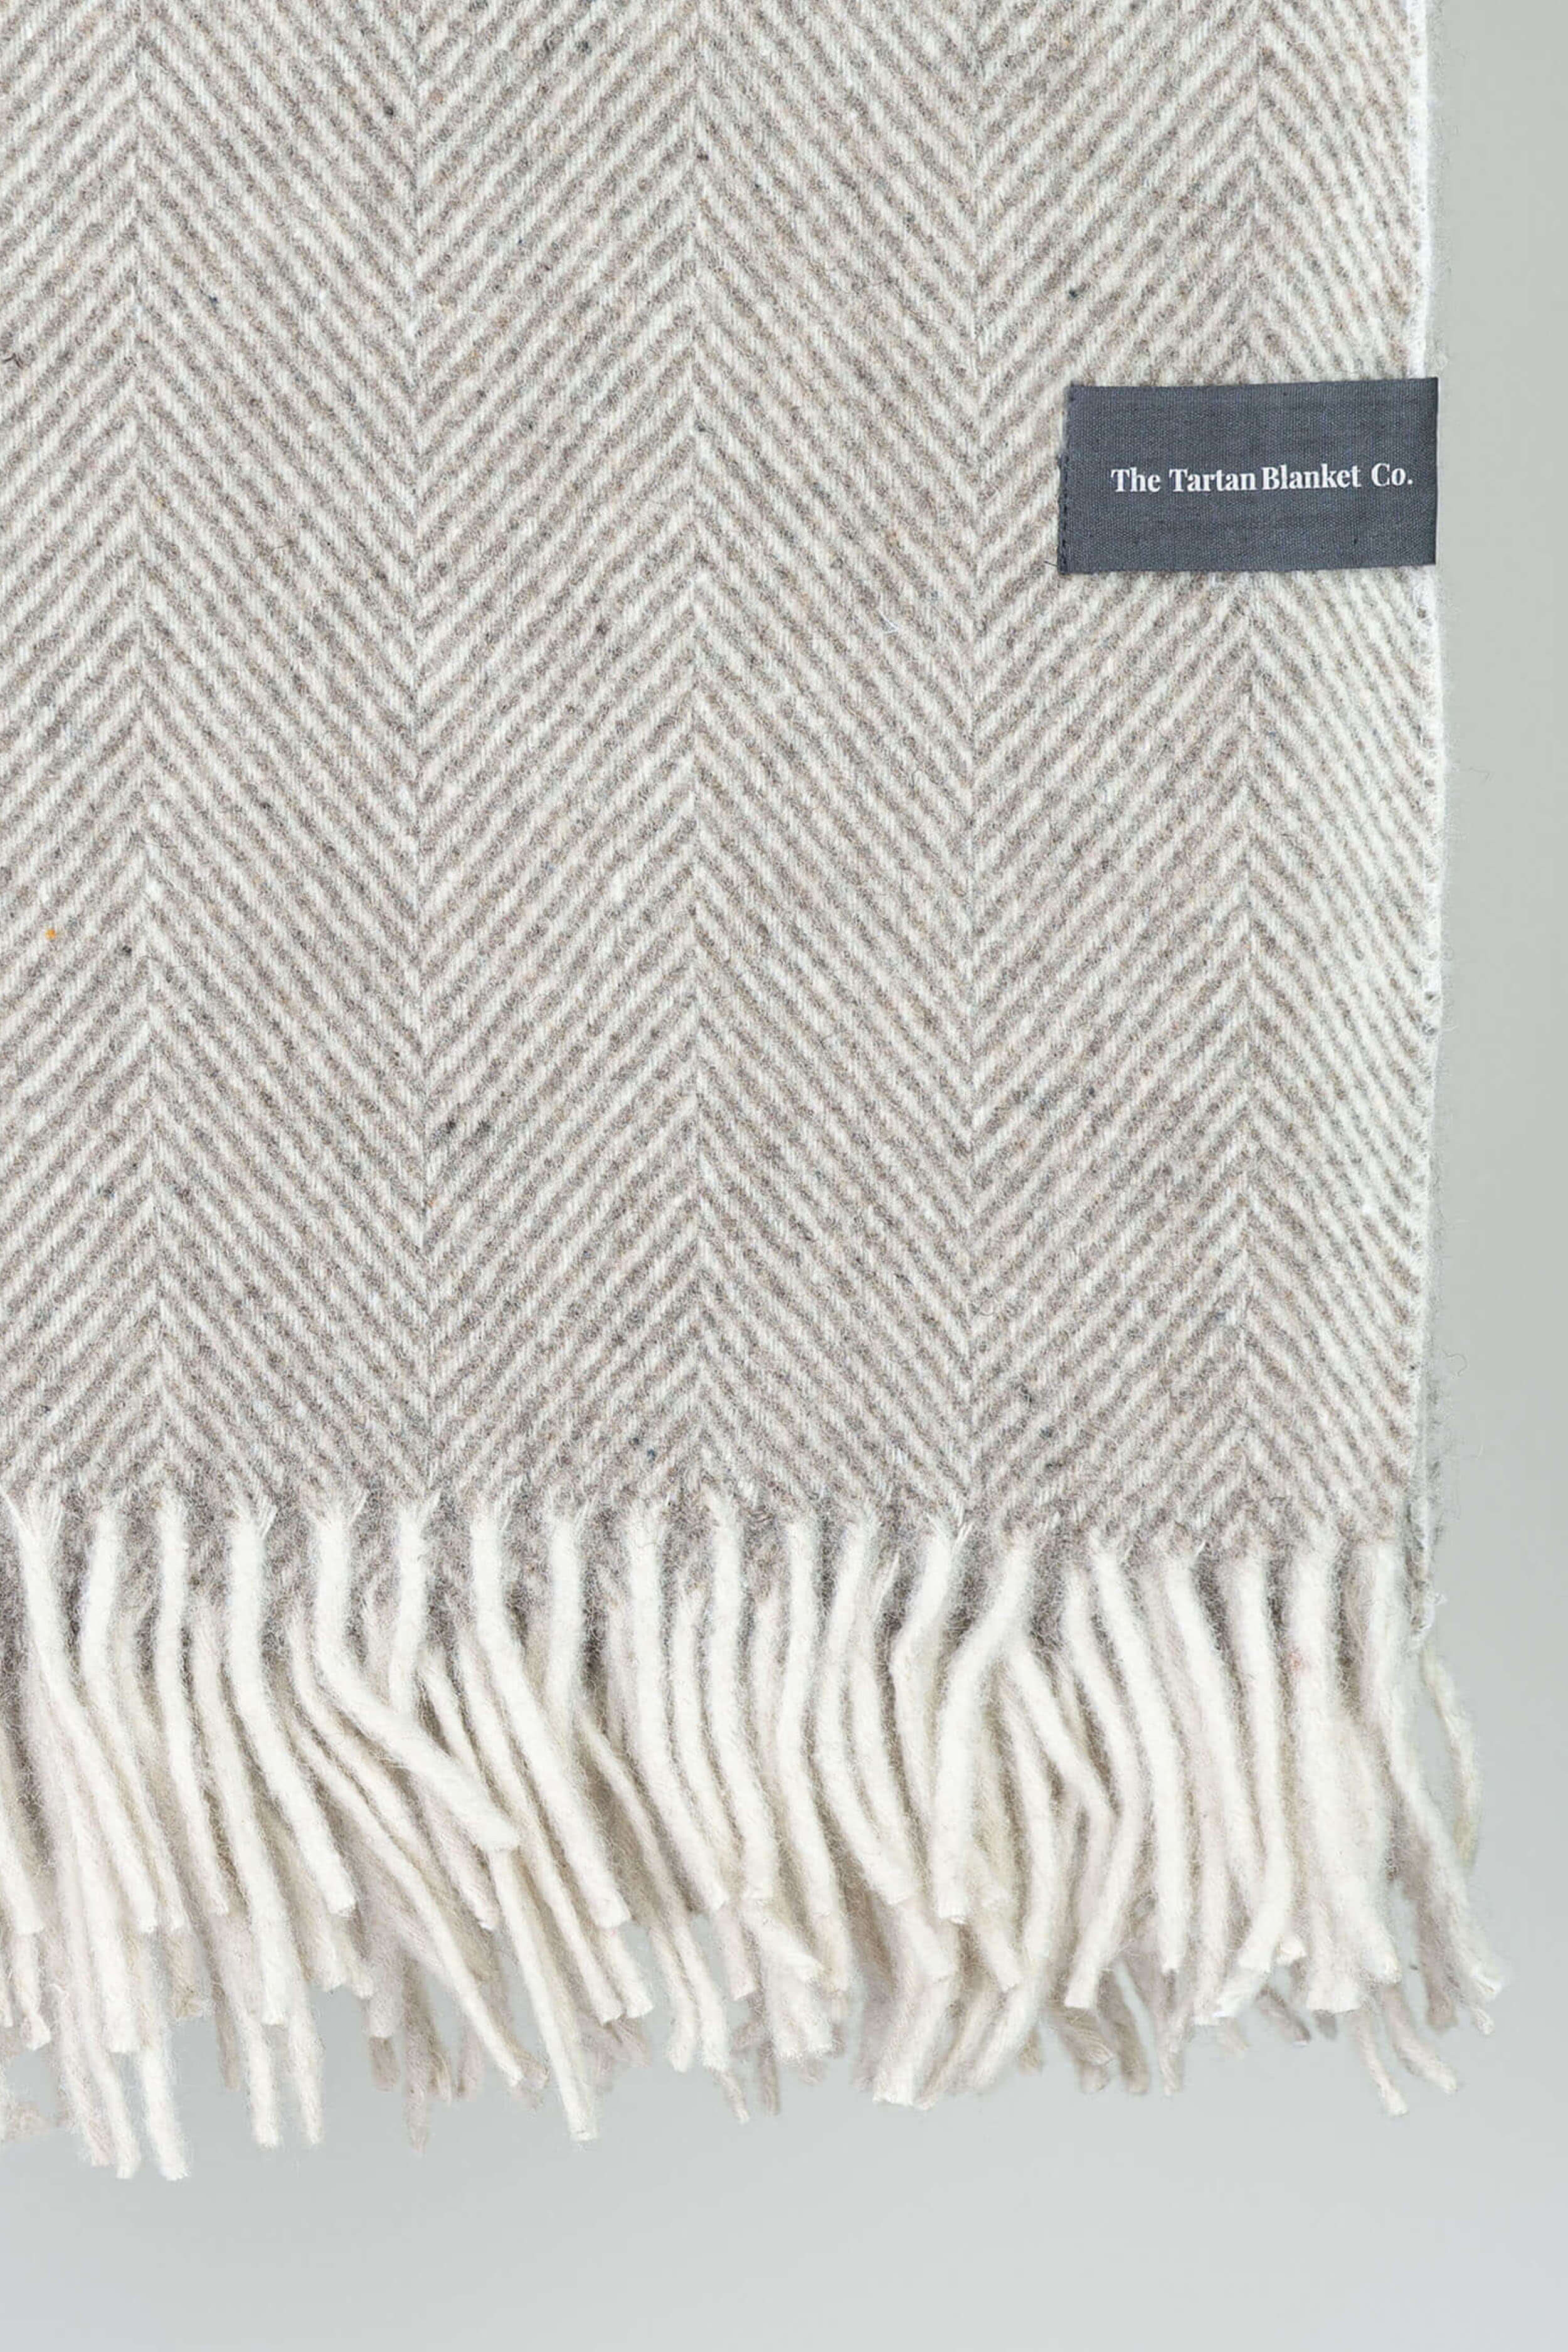 Natural Herringbone Wool Blanket By The Tartan Blanket Co - Coates & Warner